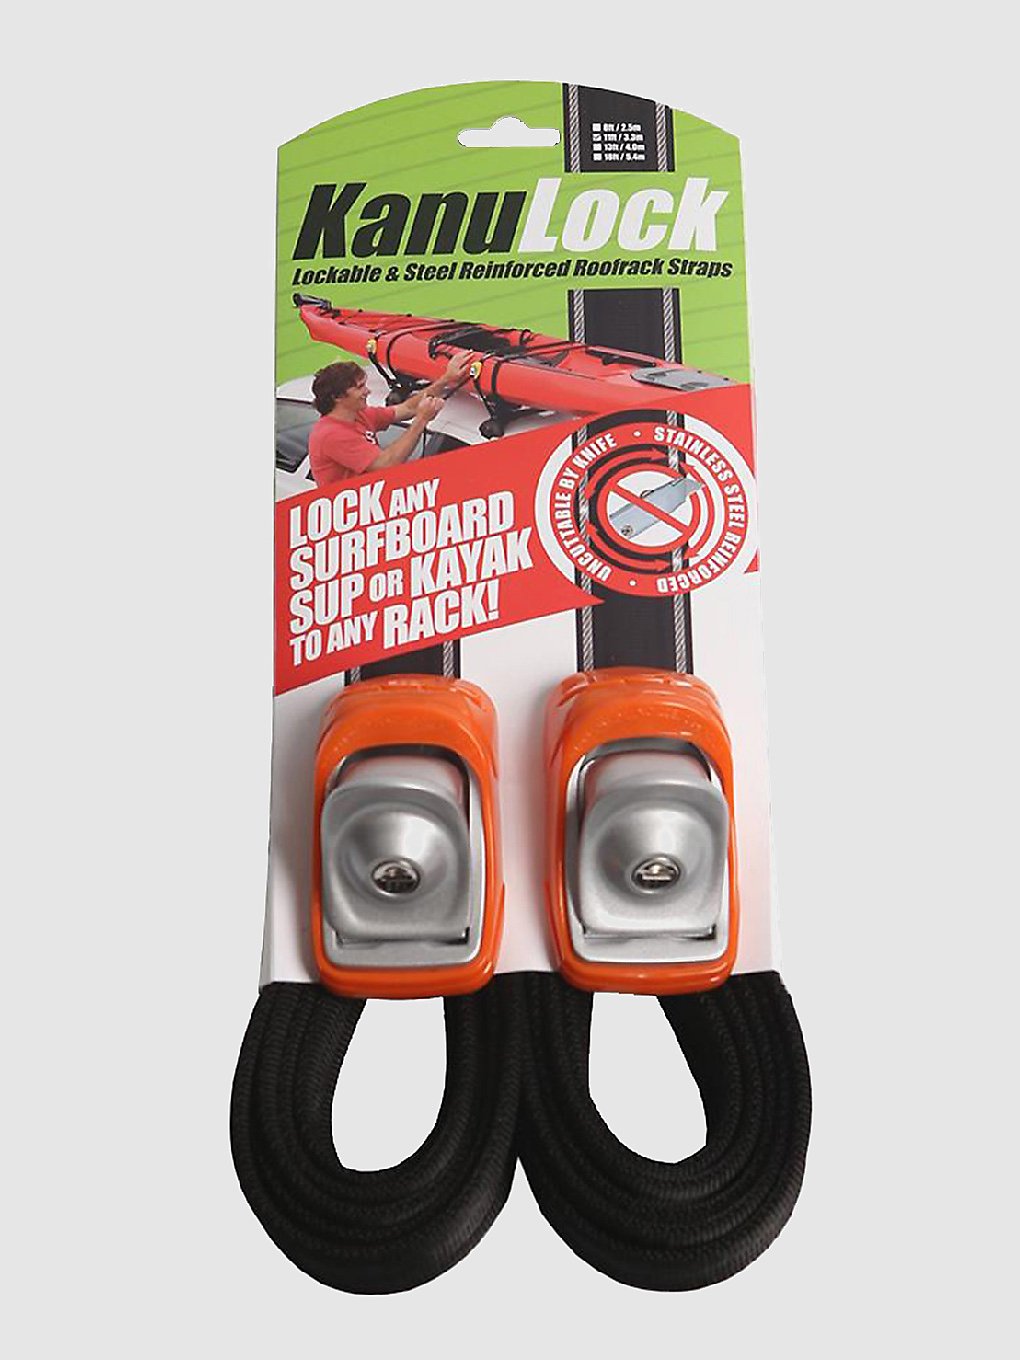 Kanulock 3.3m / 11 Ft Lockable Tiedown Set zwart